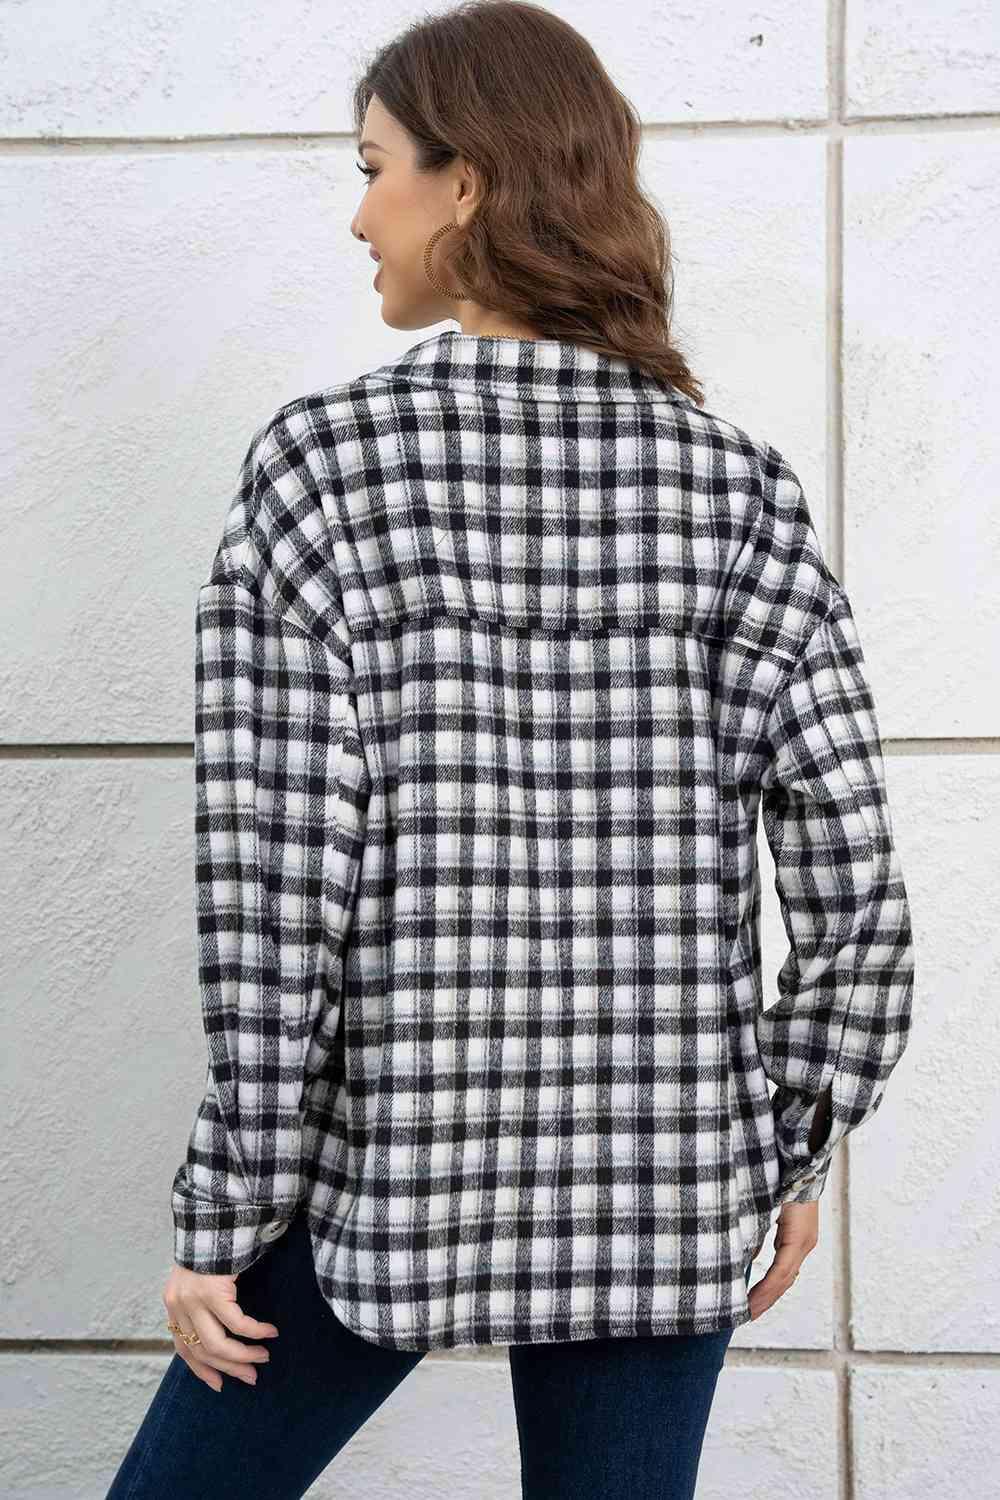 Free And Comfy Buttoned Plaid Shirt Jacket - MXSTUDIO.COM